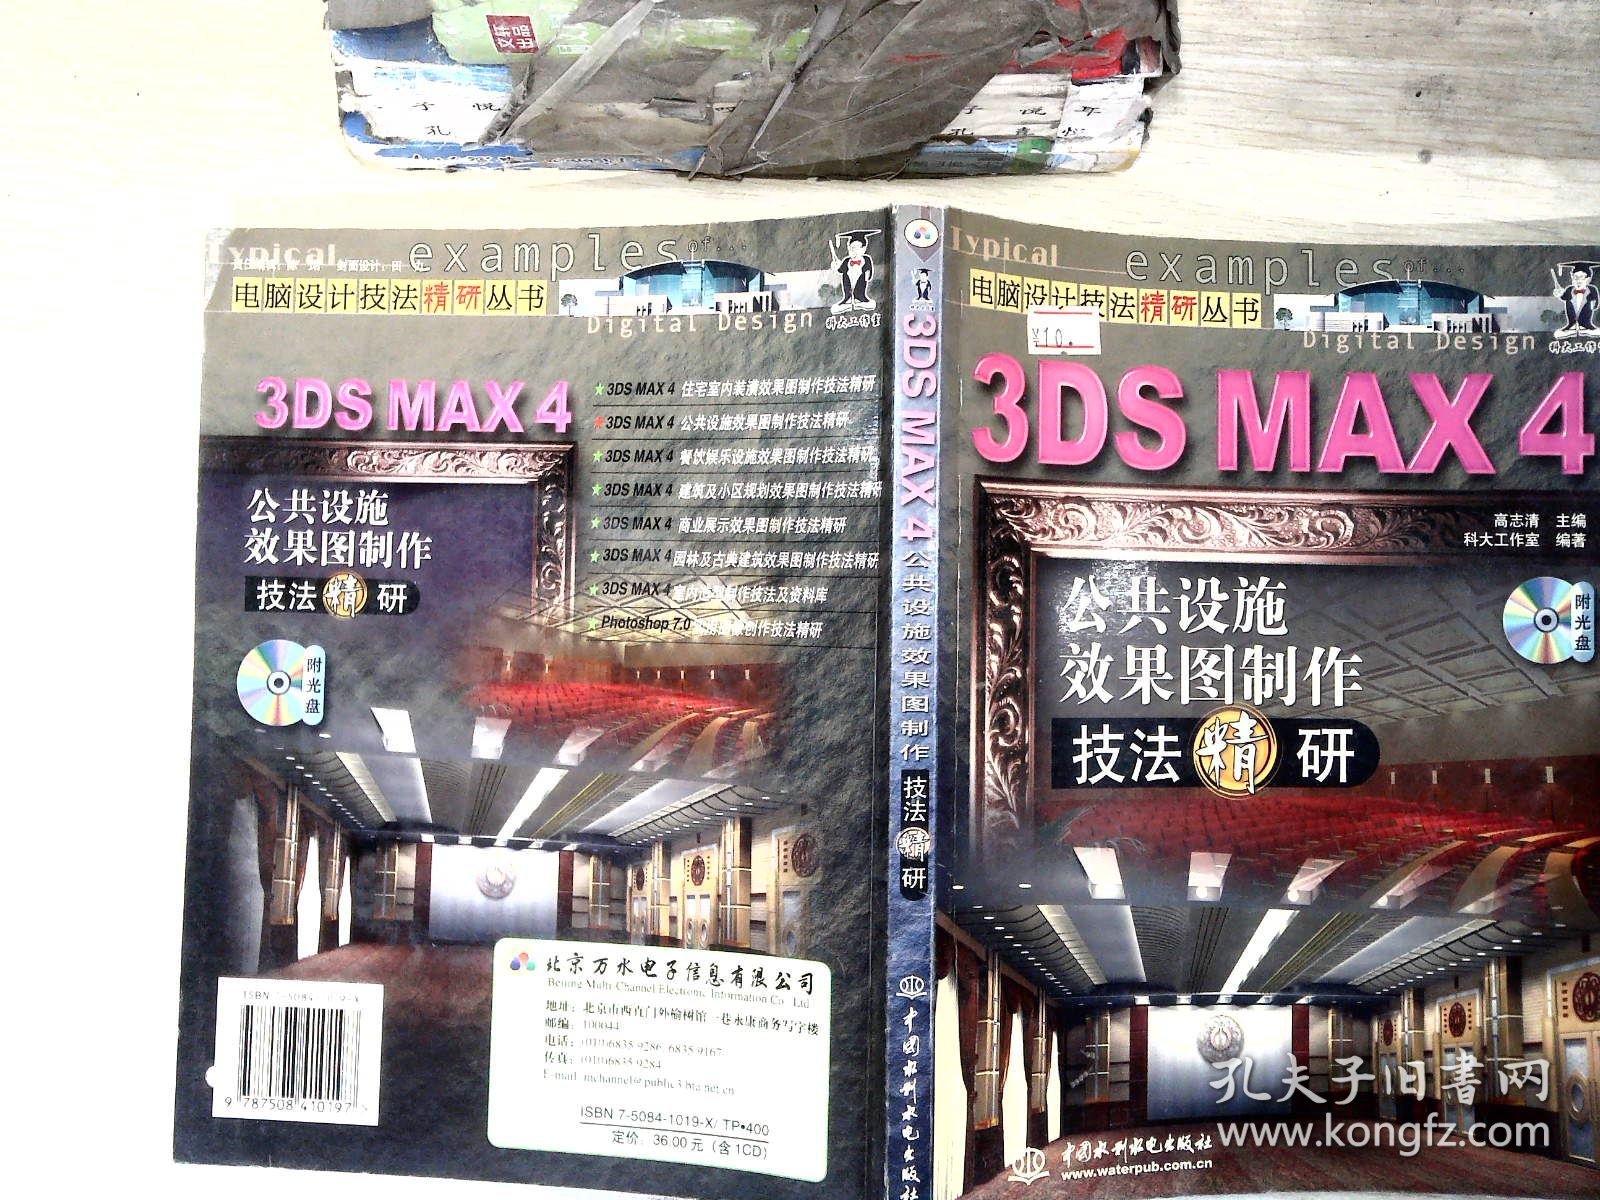 3DS MAX 4公共设施效果图制作技法精研